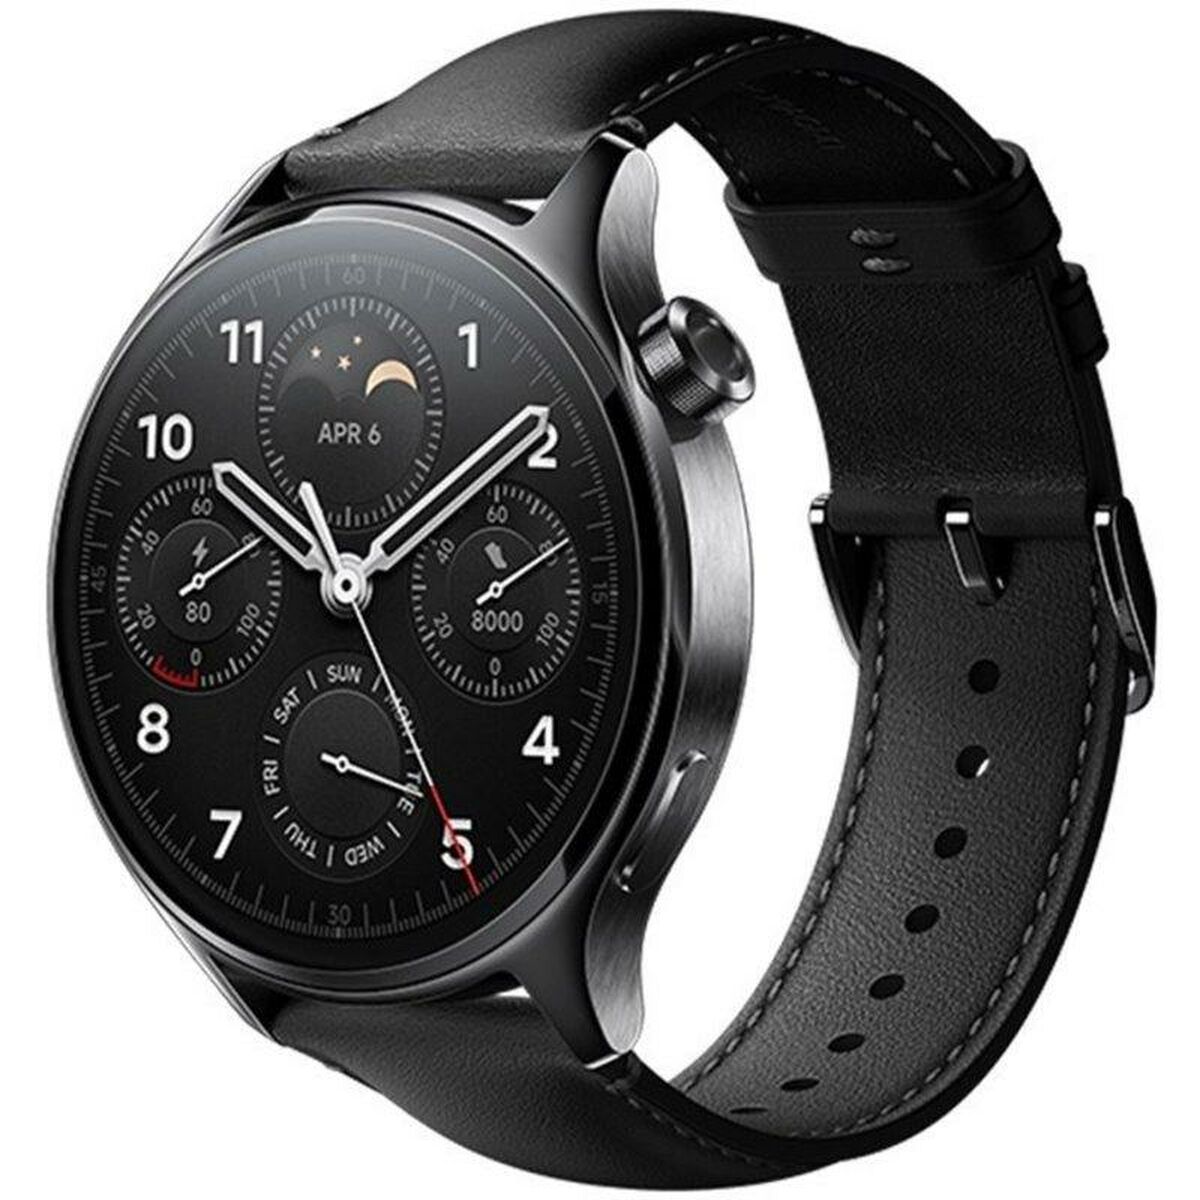 Smartwatch Xiaomi S1 Pro